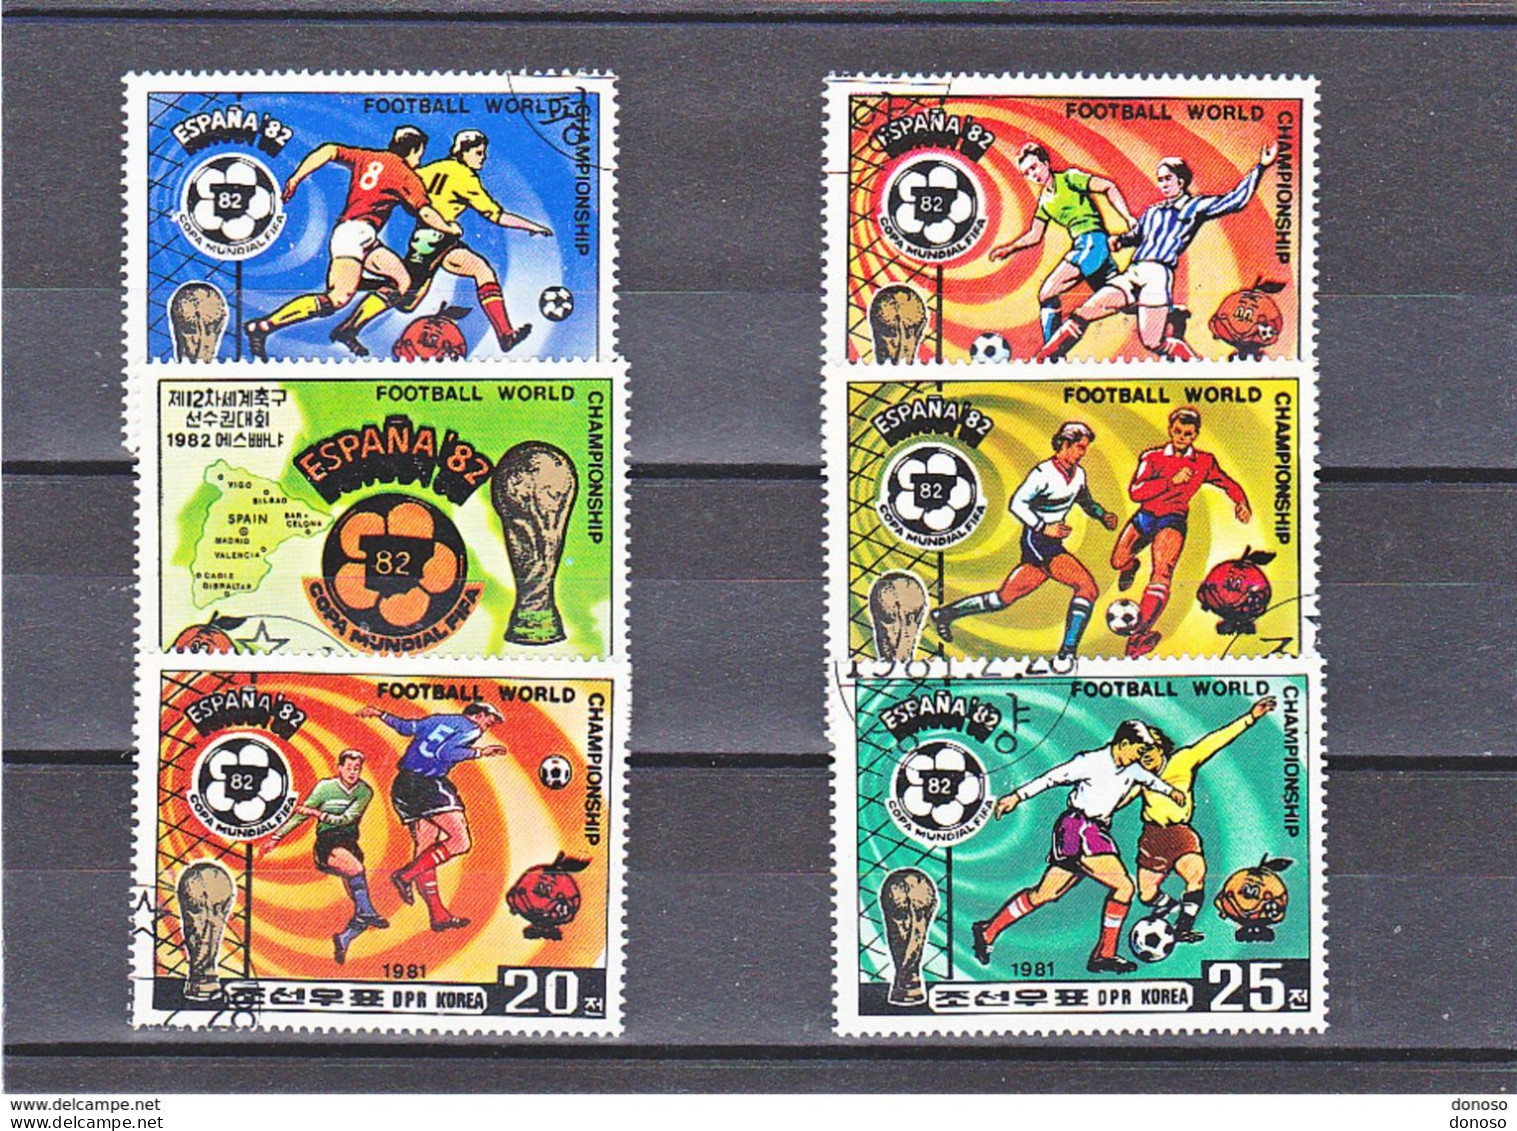 COREE DU NORD 1981 Coupe Du Monde De Football, Espagne Michel 2099-2104, Yvert 1643-1647 + PA Oblitéré, Used - Korea, North